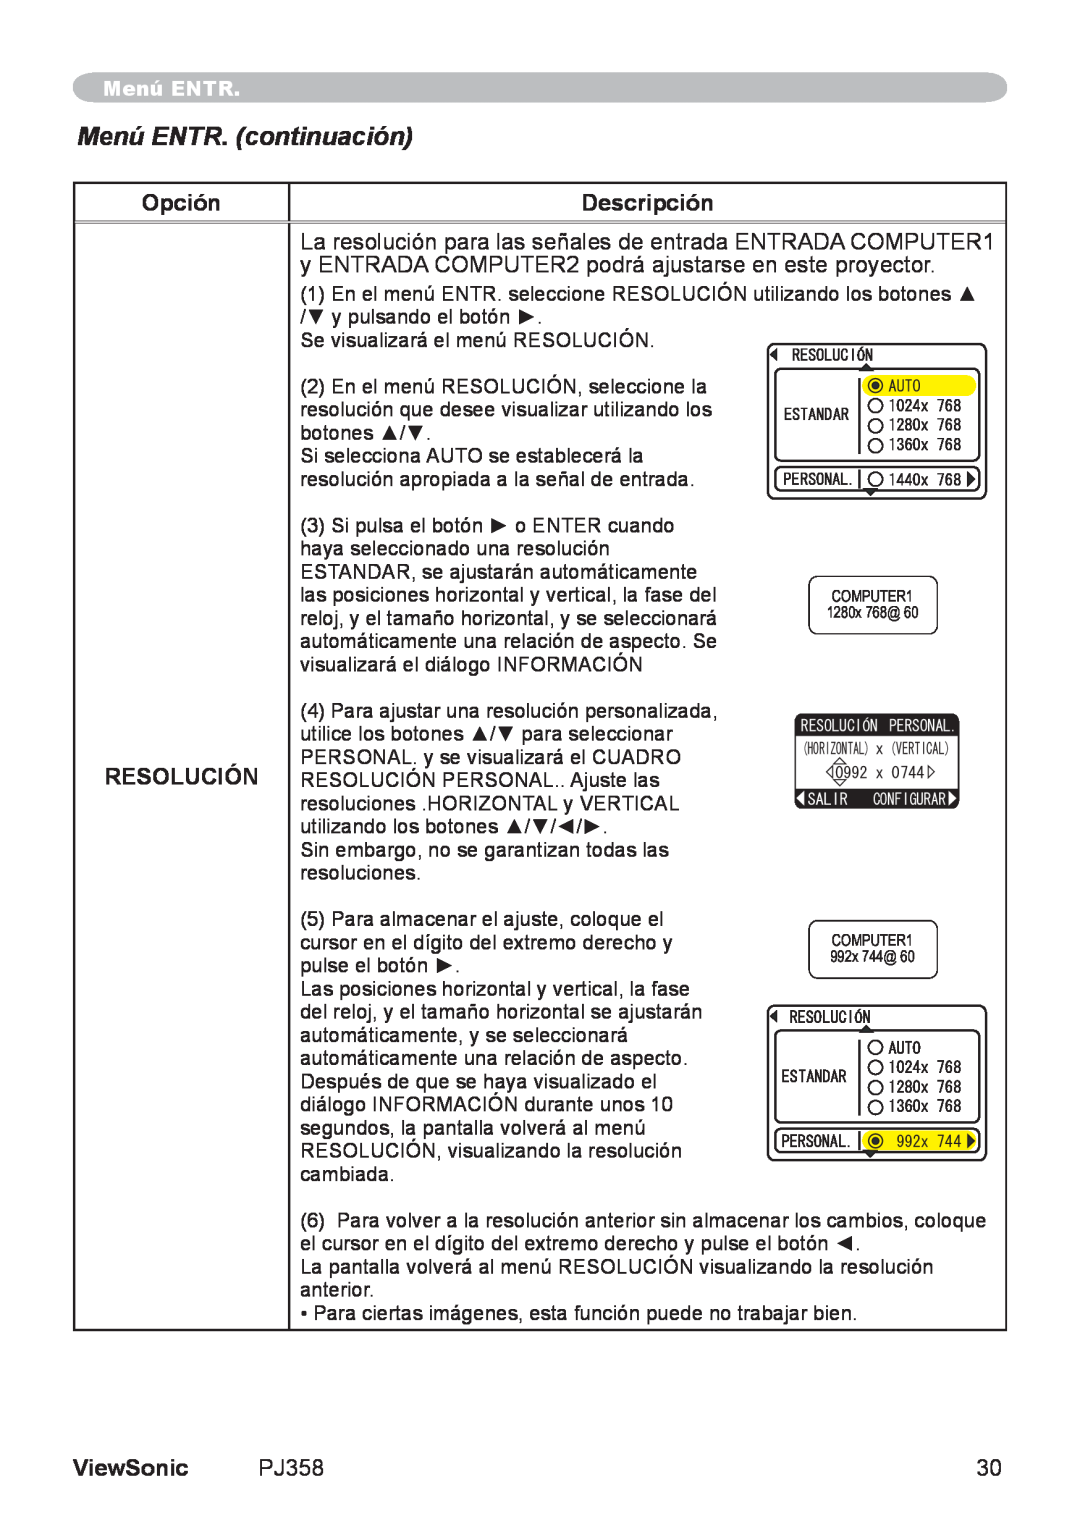 ViewSonic PJ358, VS11611 manual Menú ENTR. continuación, Opción, Descripción, Resolución, ViewSonic 